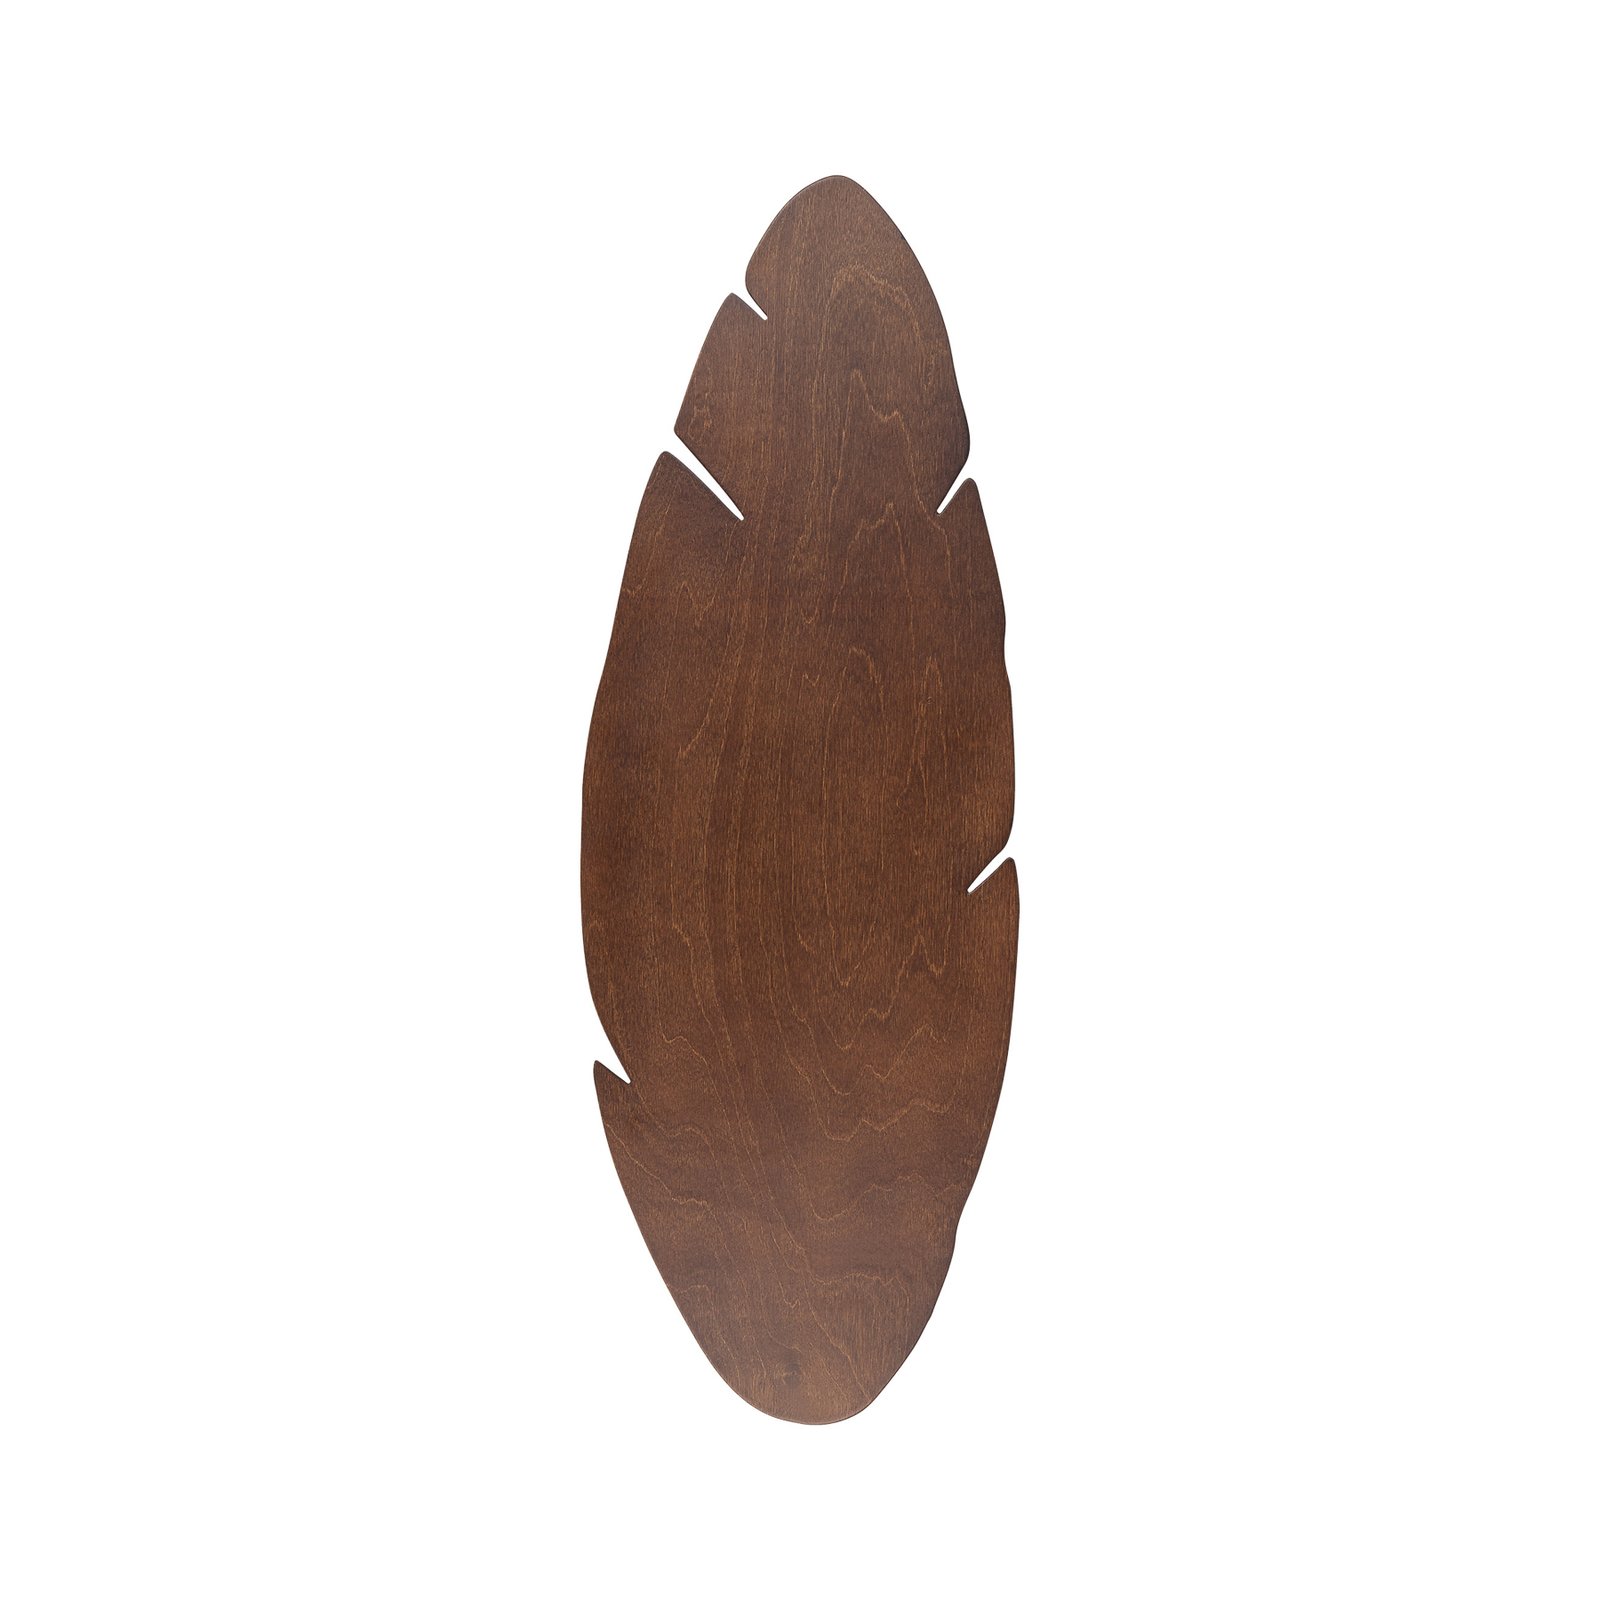 Envostar kinkiet Lehti, kształt liścia, orzech, 69 x 24 cm